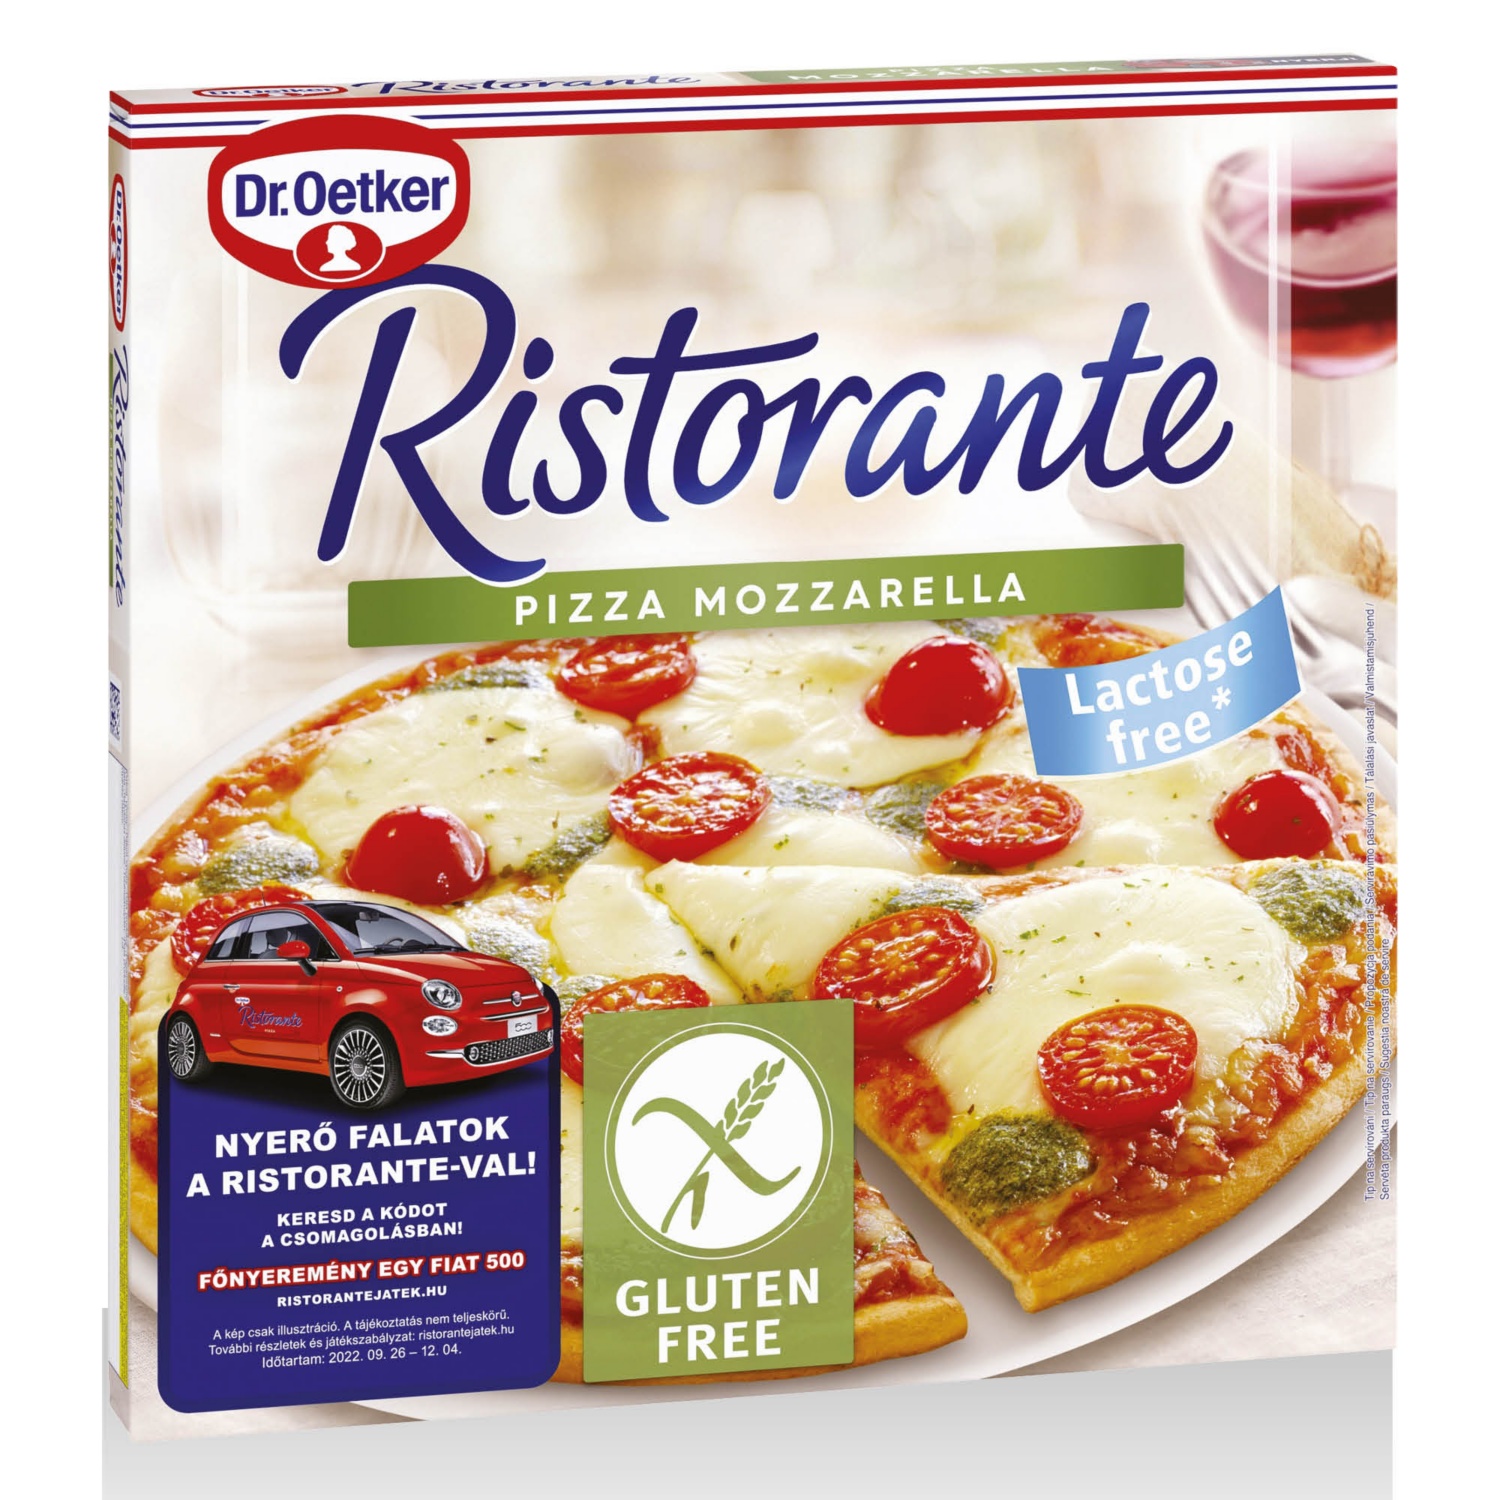 DR. OETKER Ristorante pizza mozzarella, 370 g